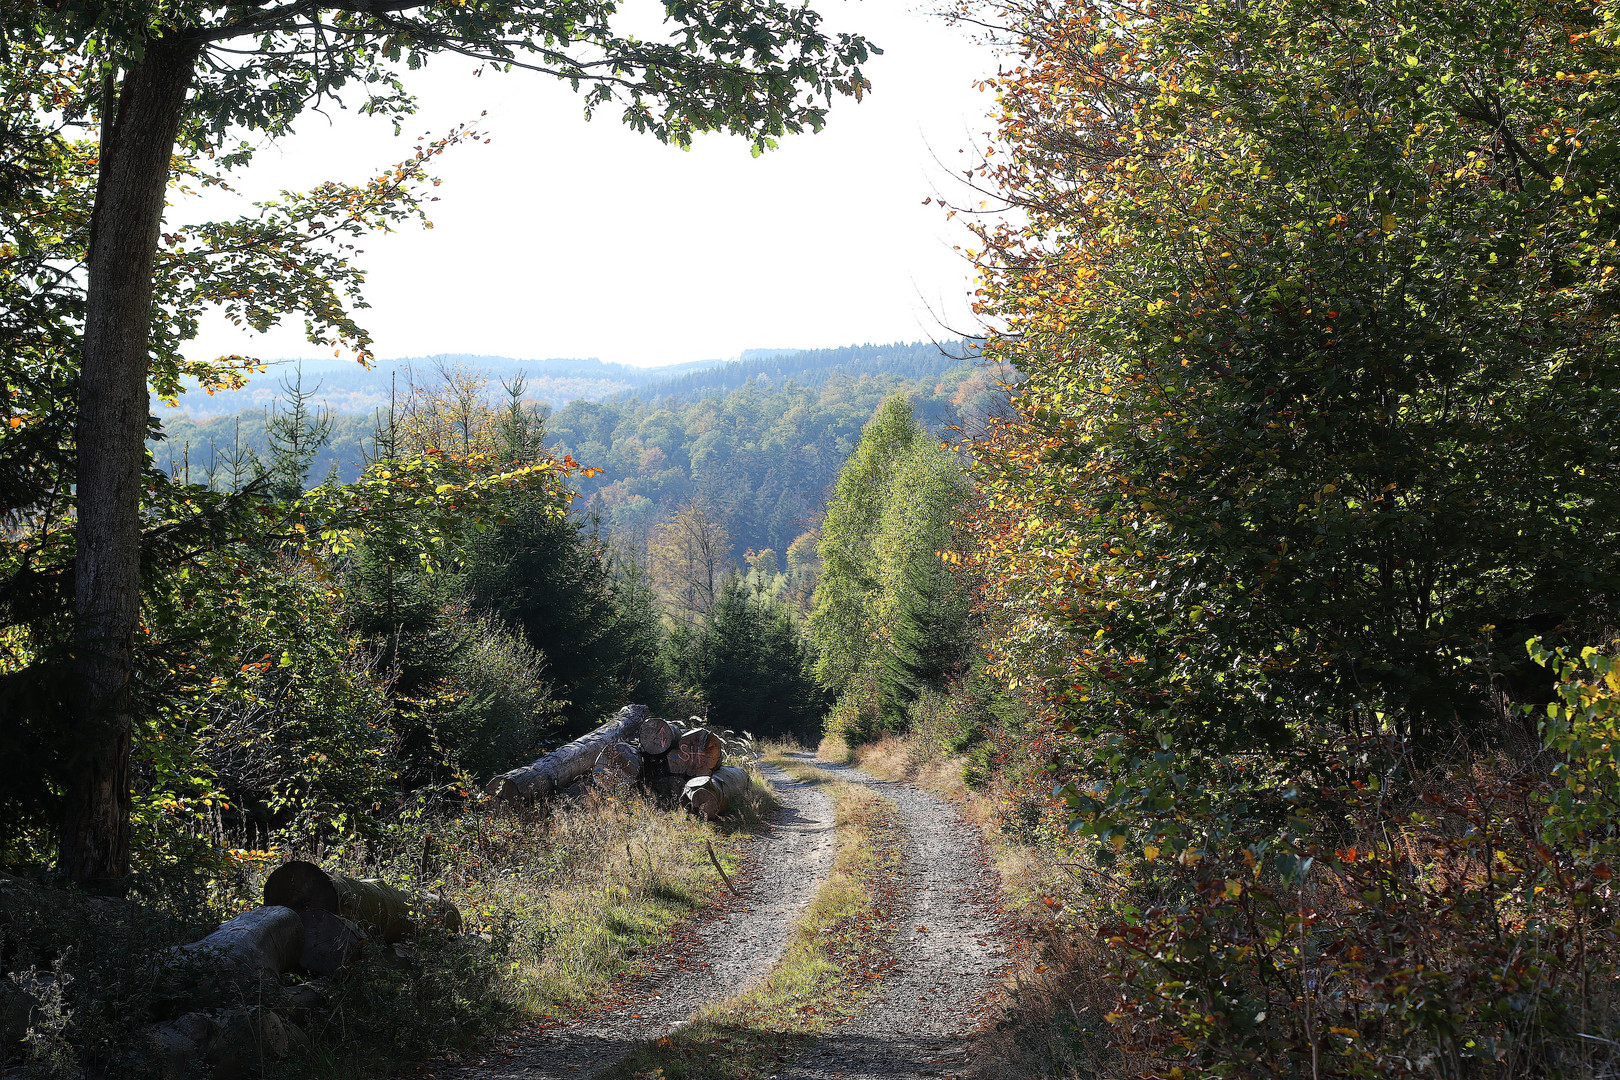 Waldweg im goldenen Oktober